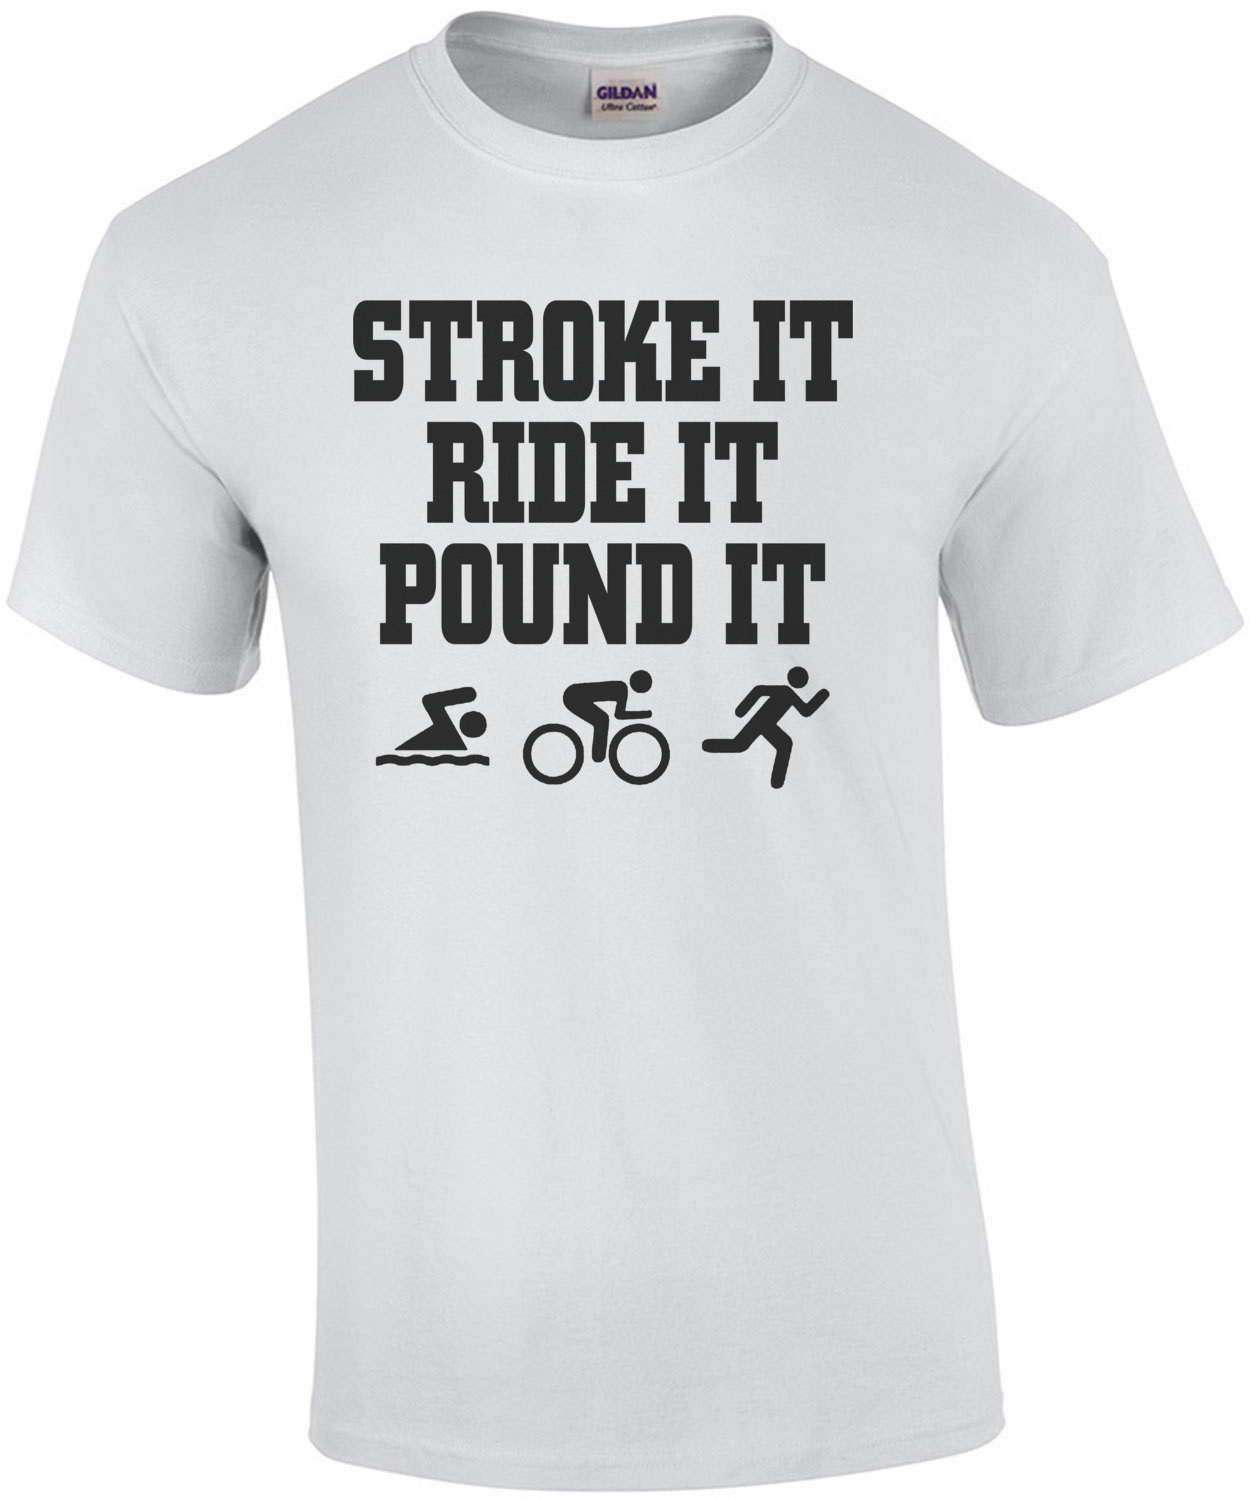 Stroke It Ride It Pound It T-Shirt